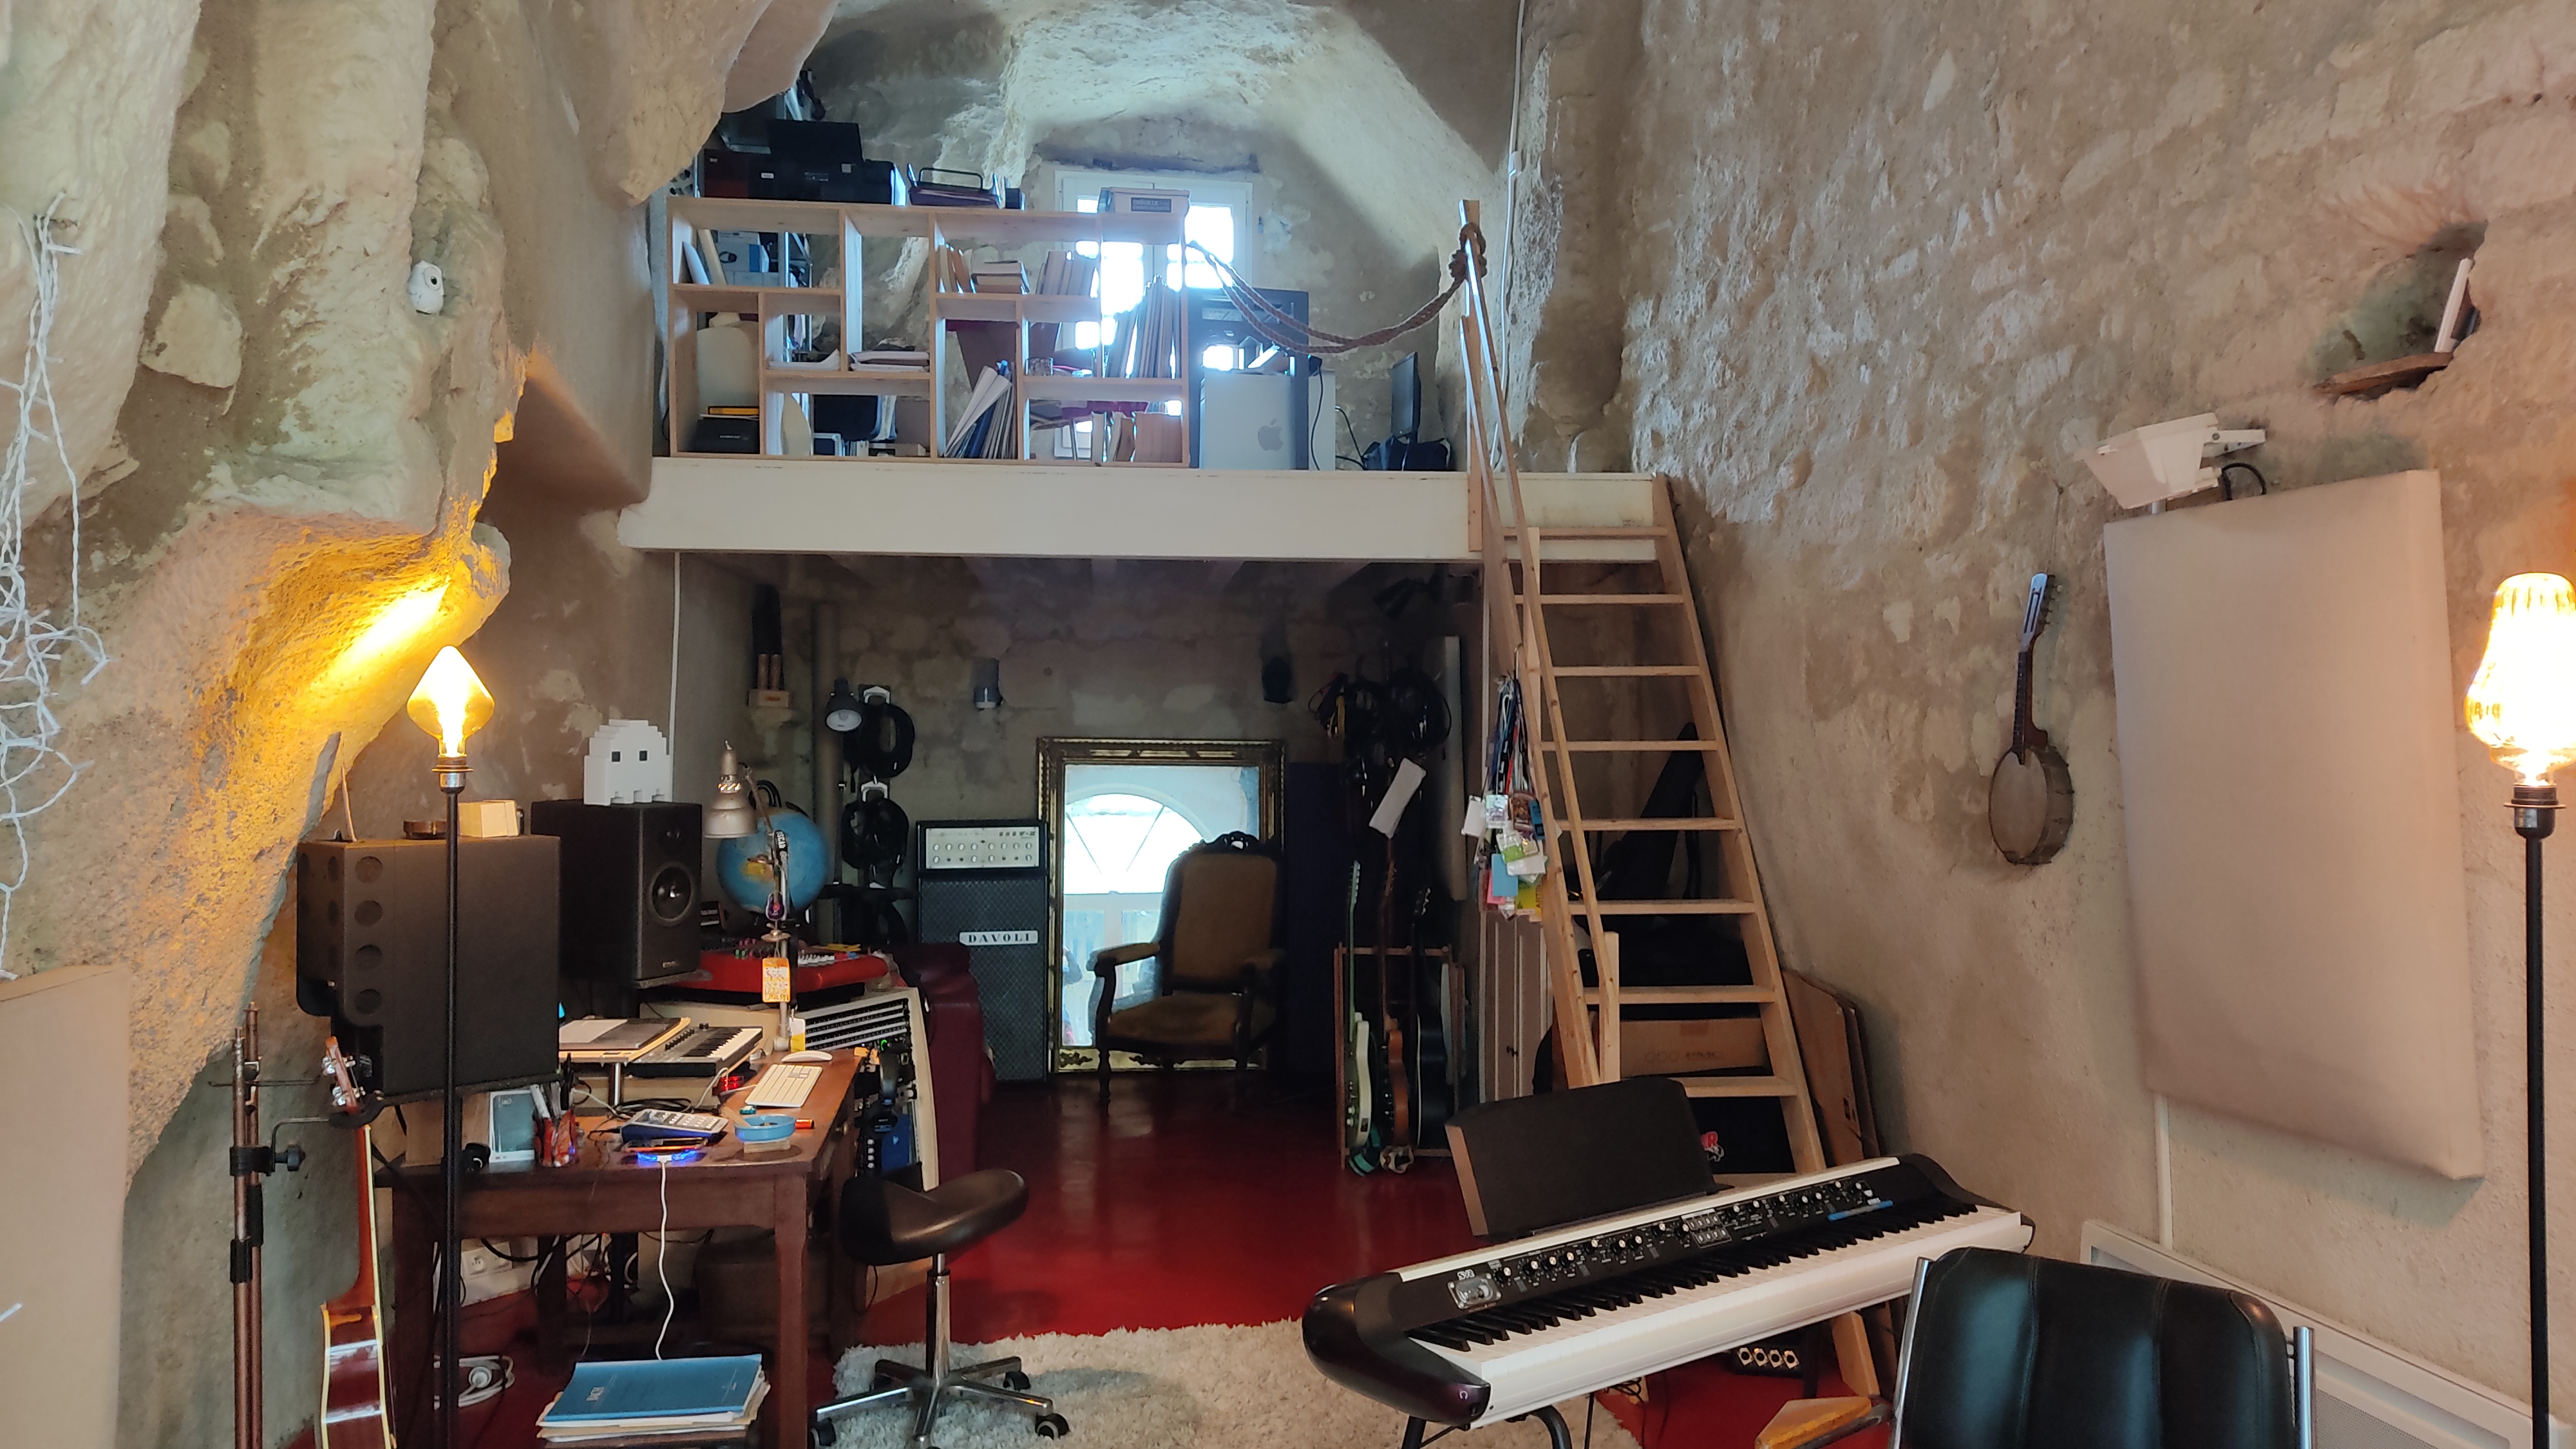 Le studio BirdLand est installé dans une ancienne maison troglodytique de six mètres sous plafond. ©RCF Anjou 